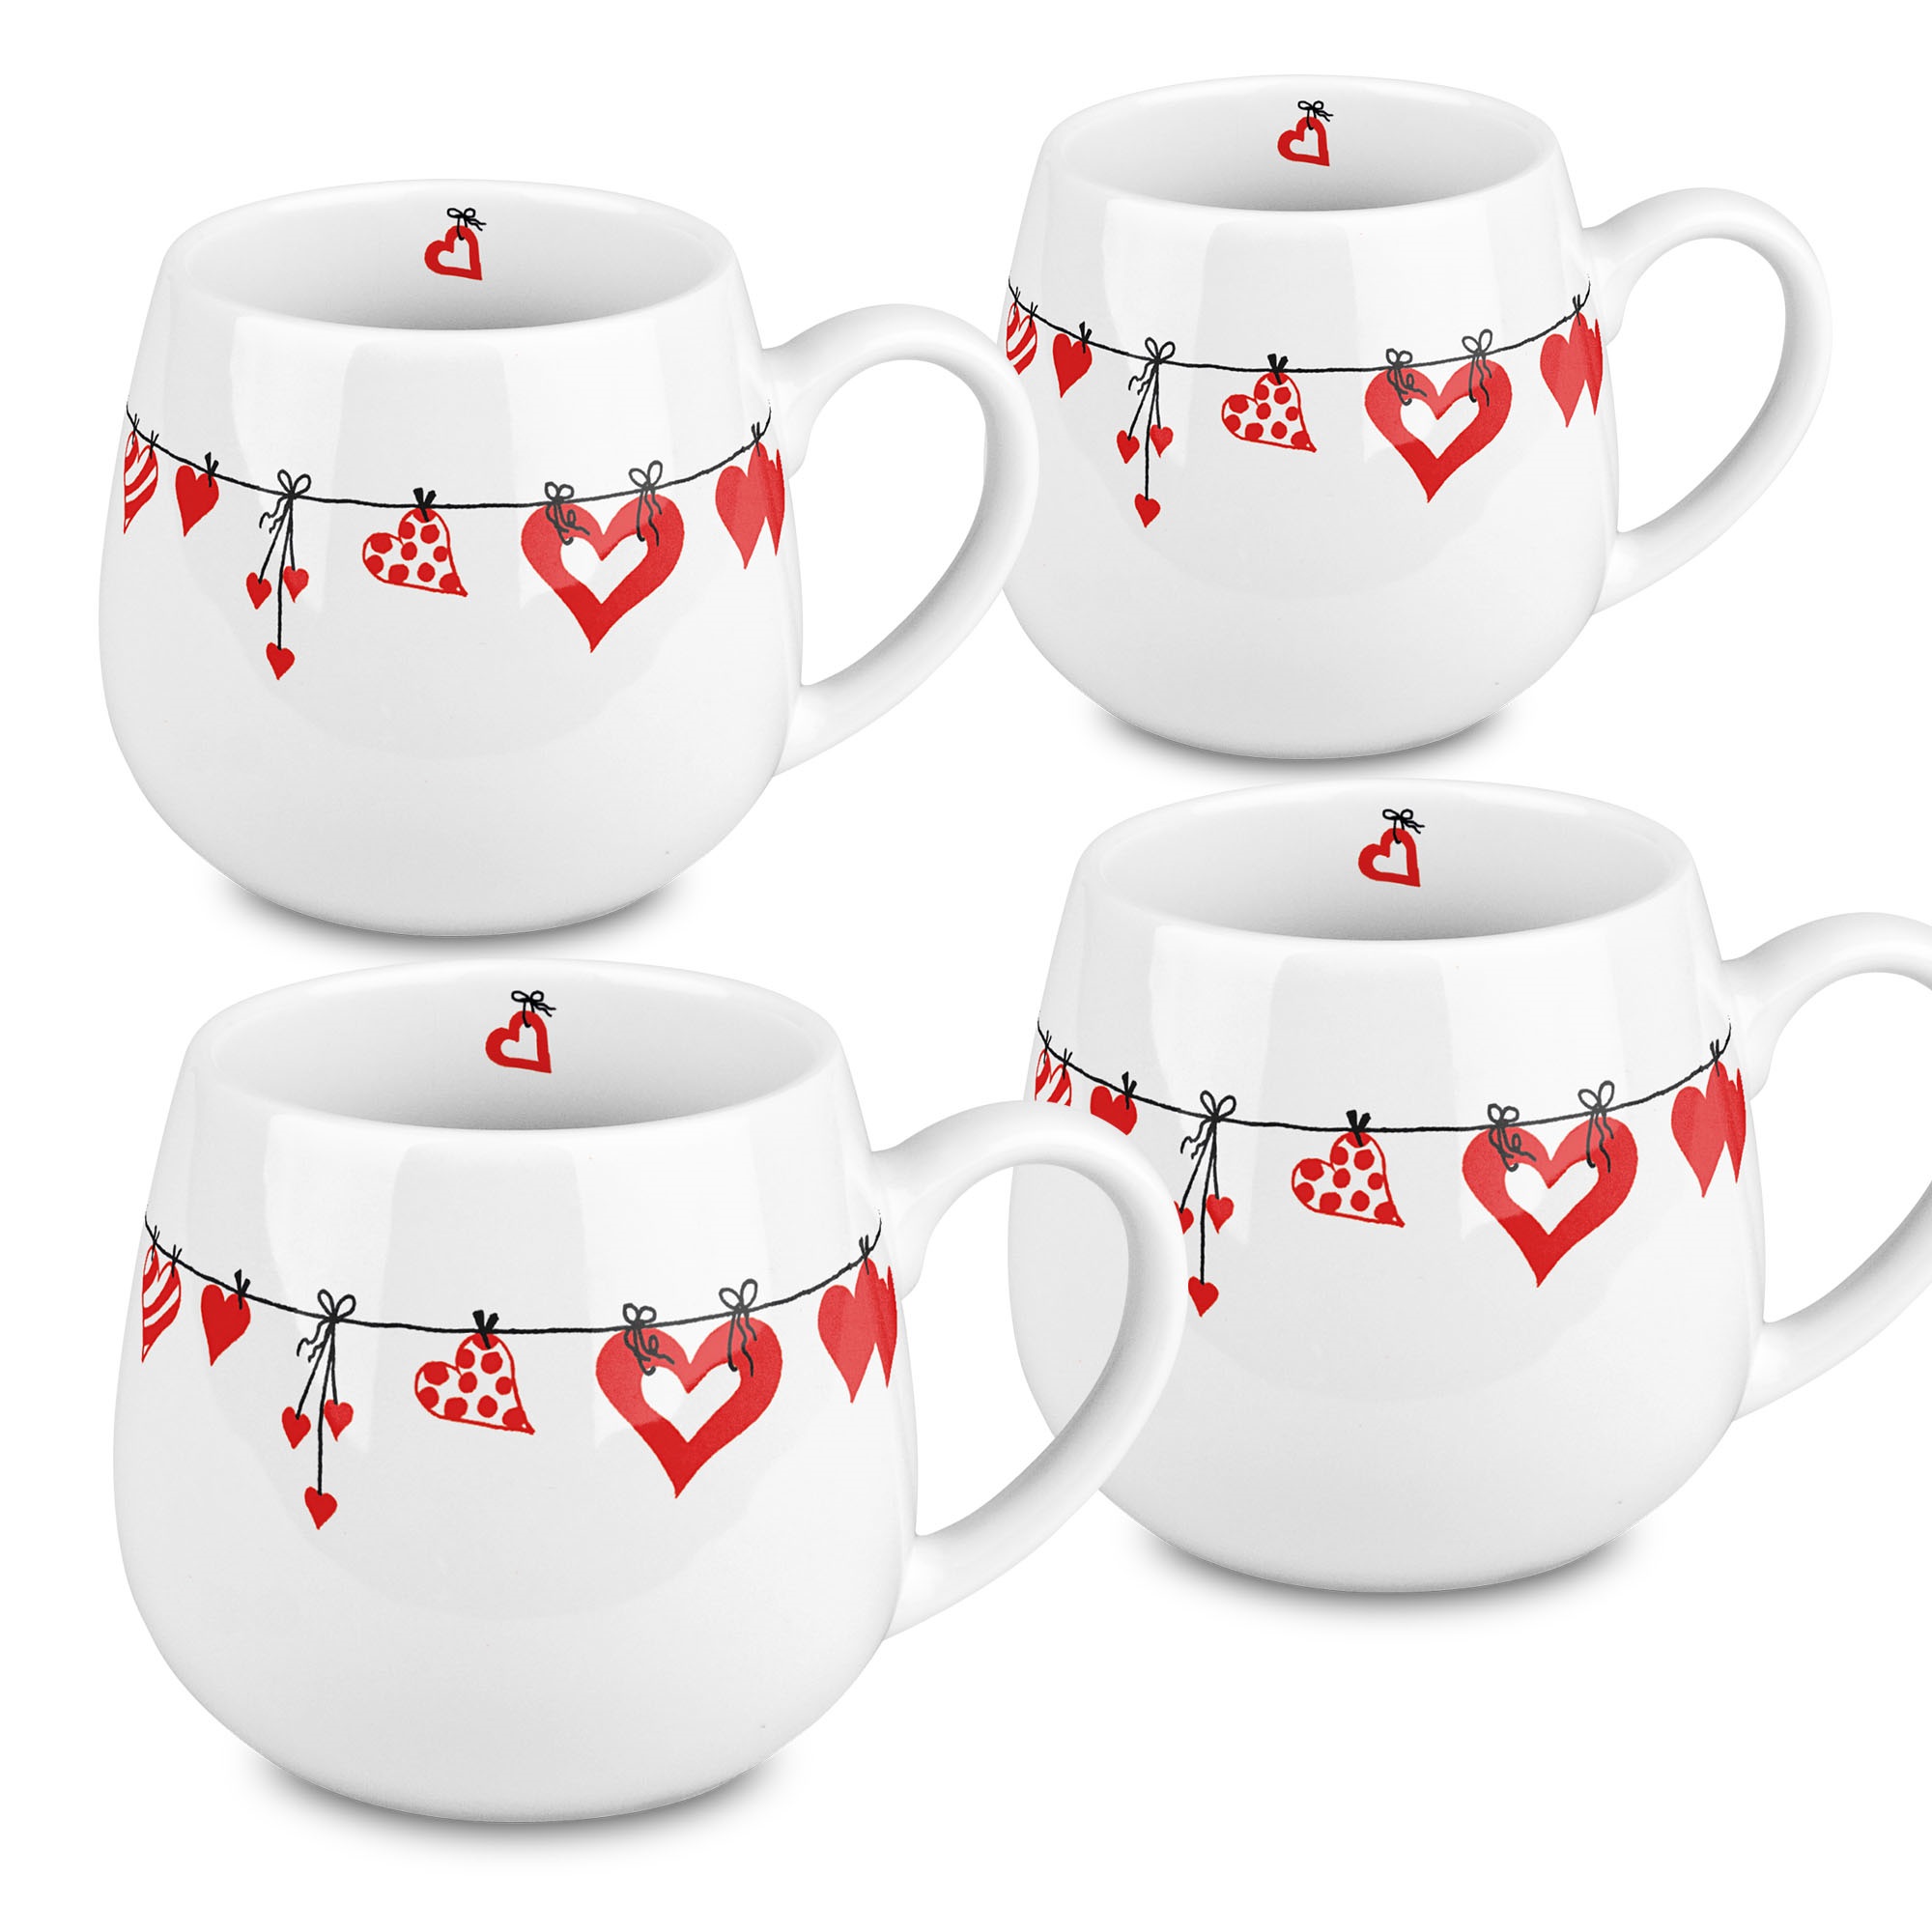 44 1 143 1919 Hearts Clothes Snuggle Mugs - Set Of 4